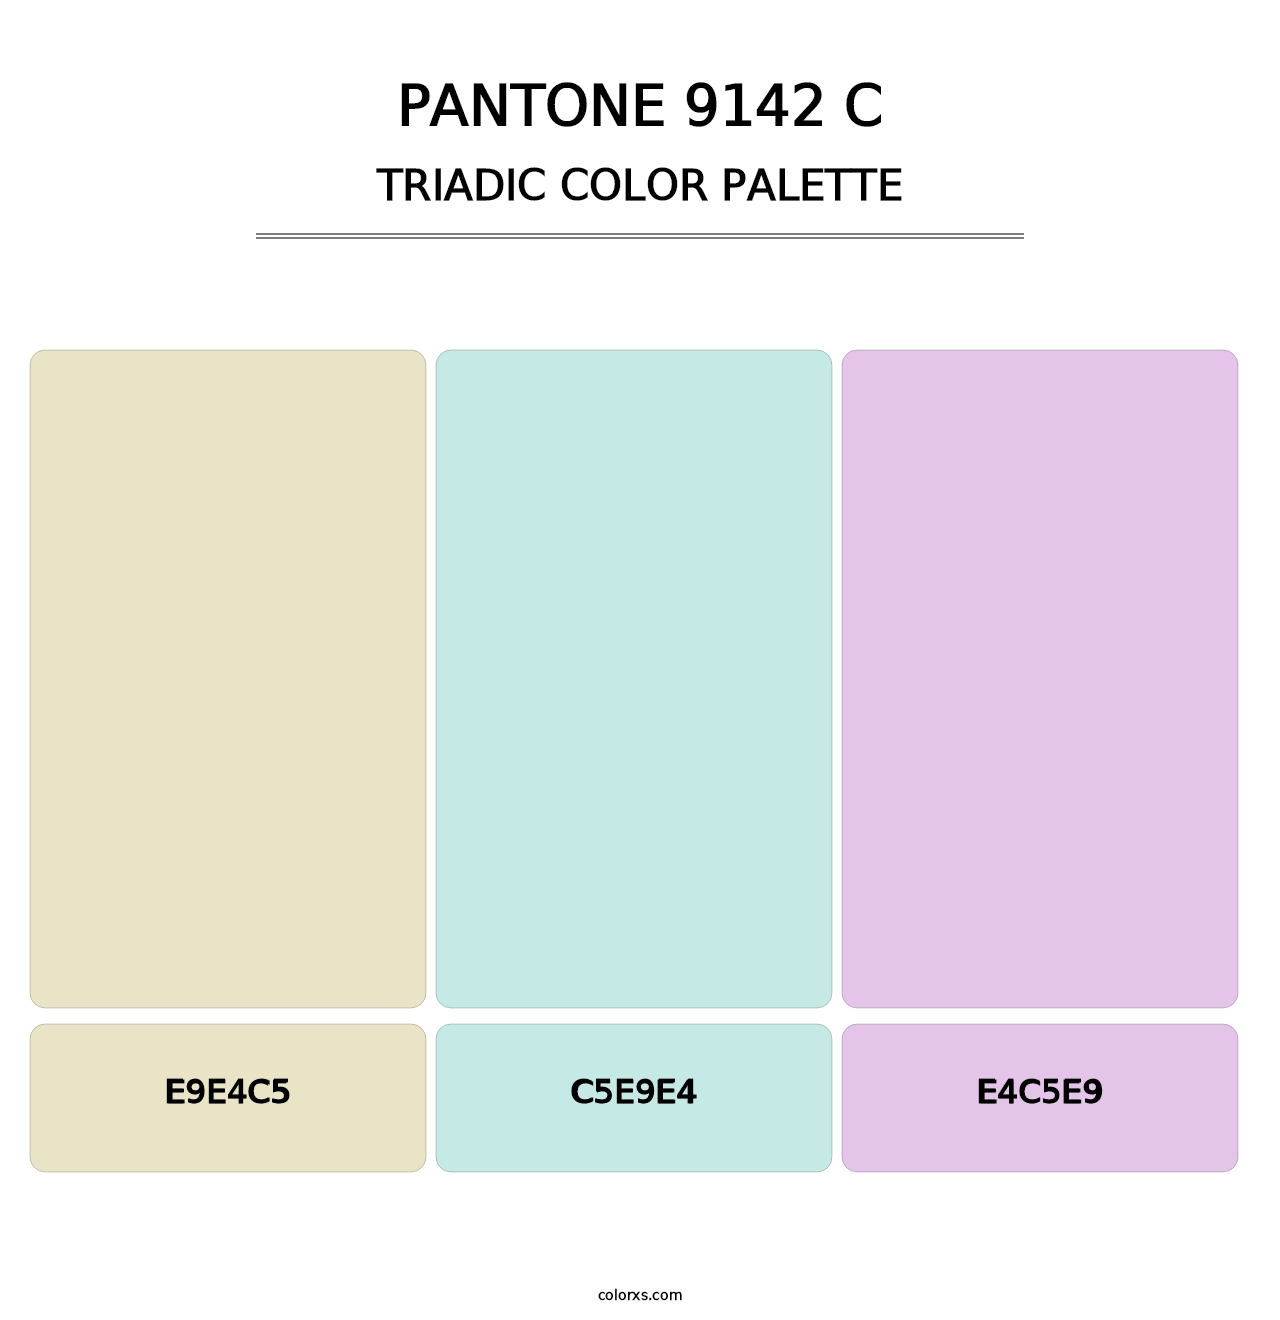 PANTONE 9142 C - Triadic Color Palette